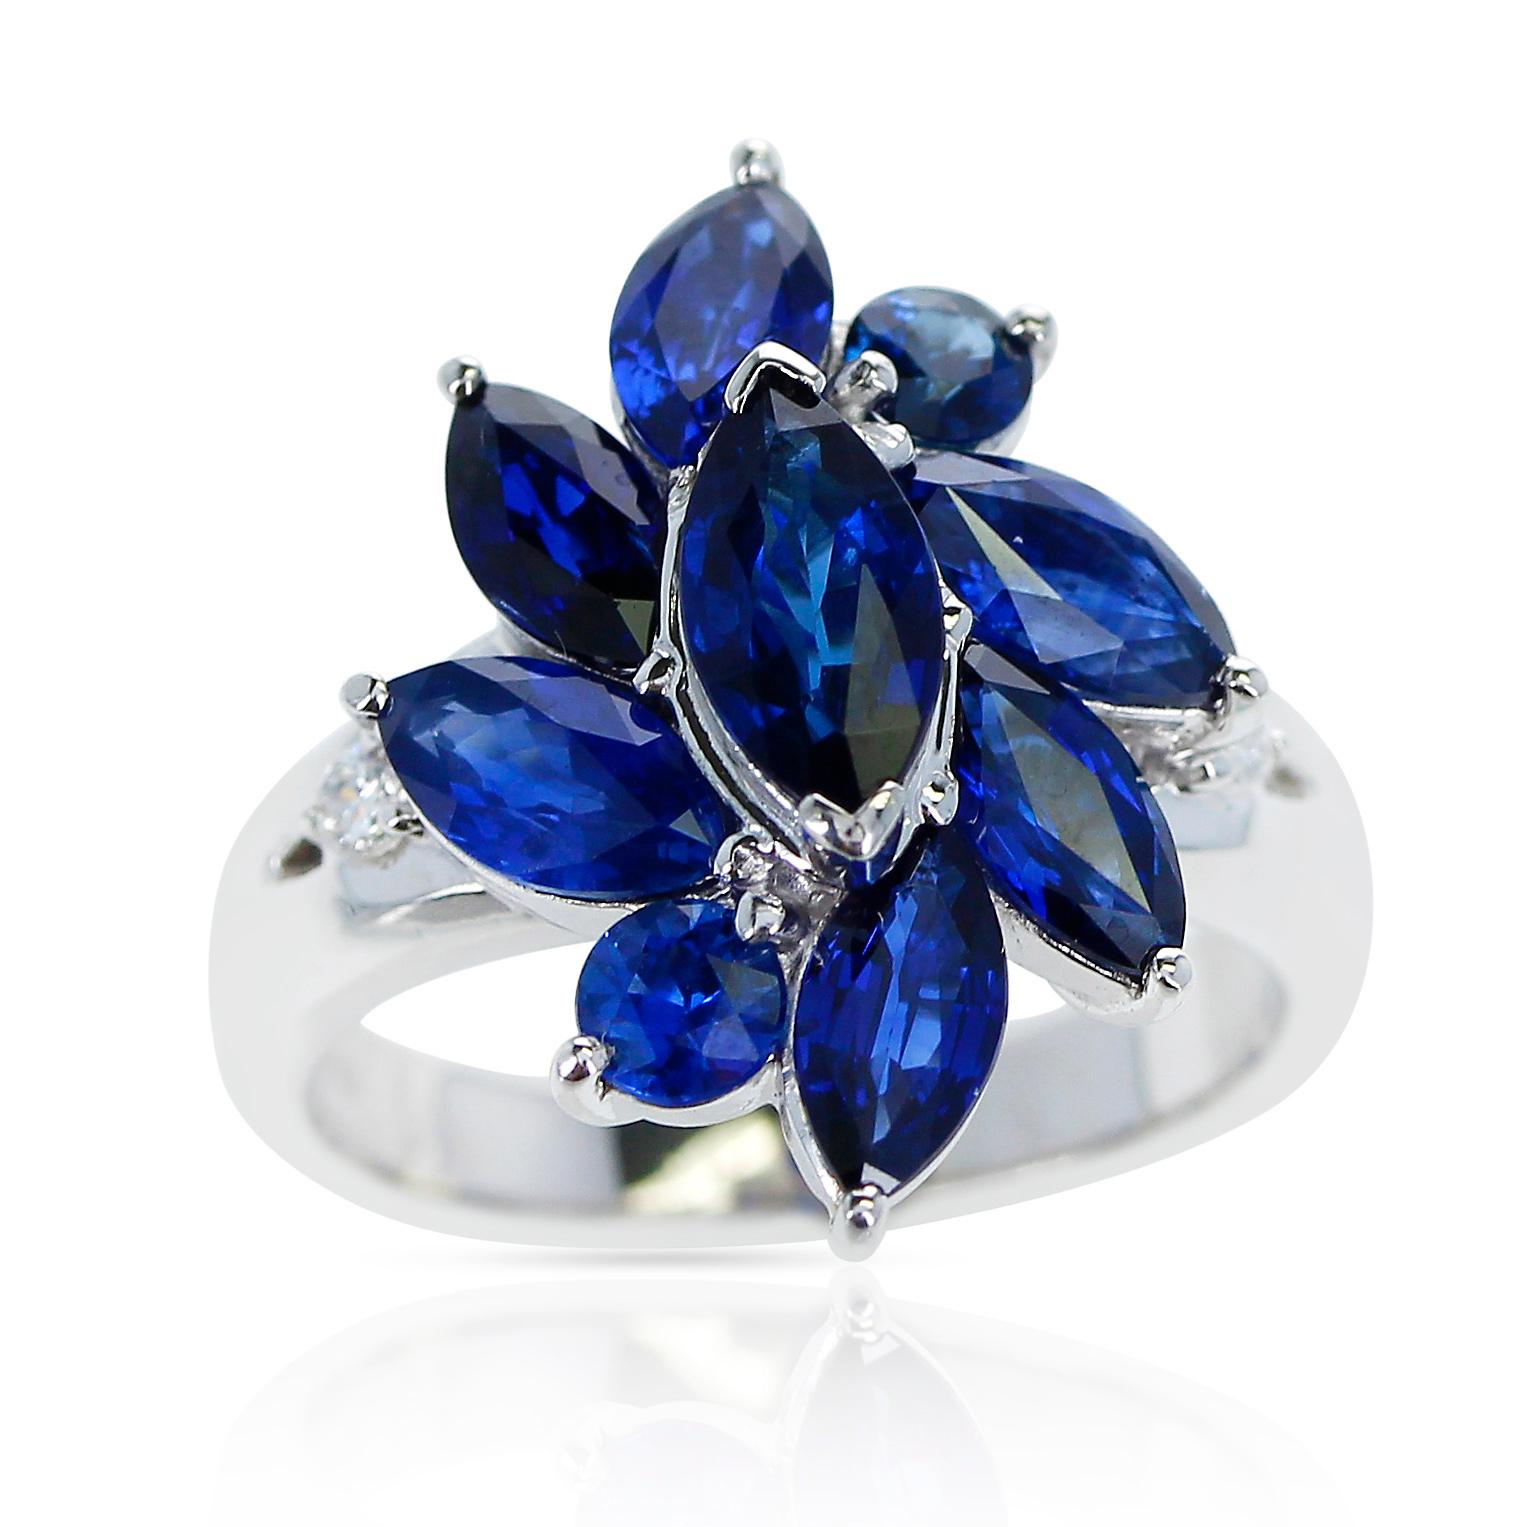 Bague en forme de fleur avec saphirs bleus marquis de 3,88 carats et diamants ronds de 0,06 carats, en platine. Taille de la bague : 5,75 US. Poids total : 9,58 grammes. 